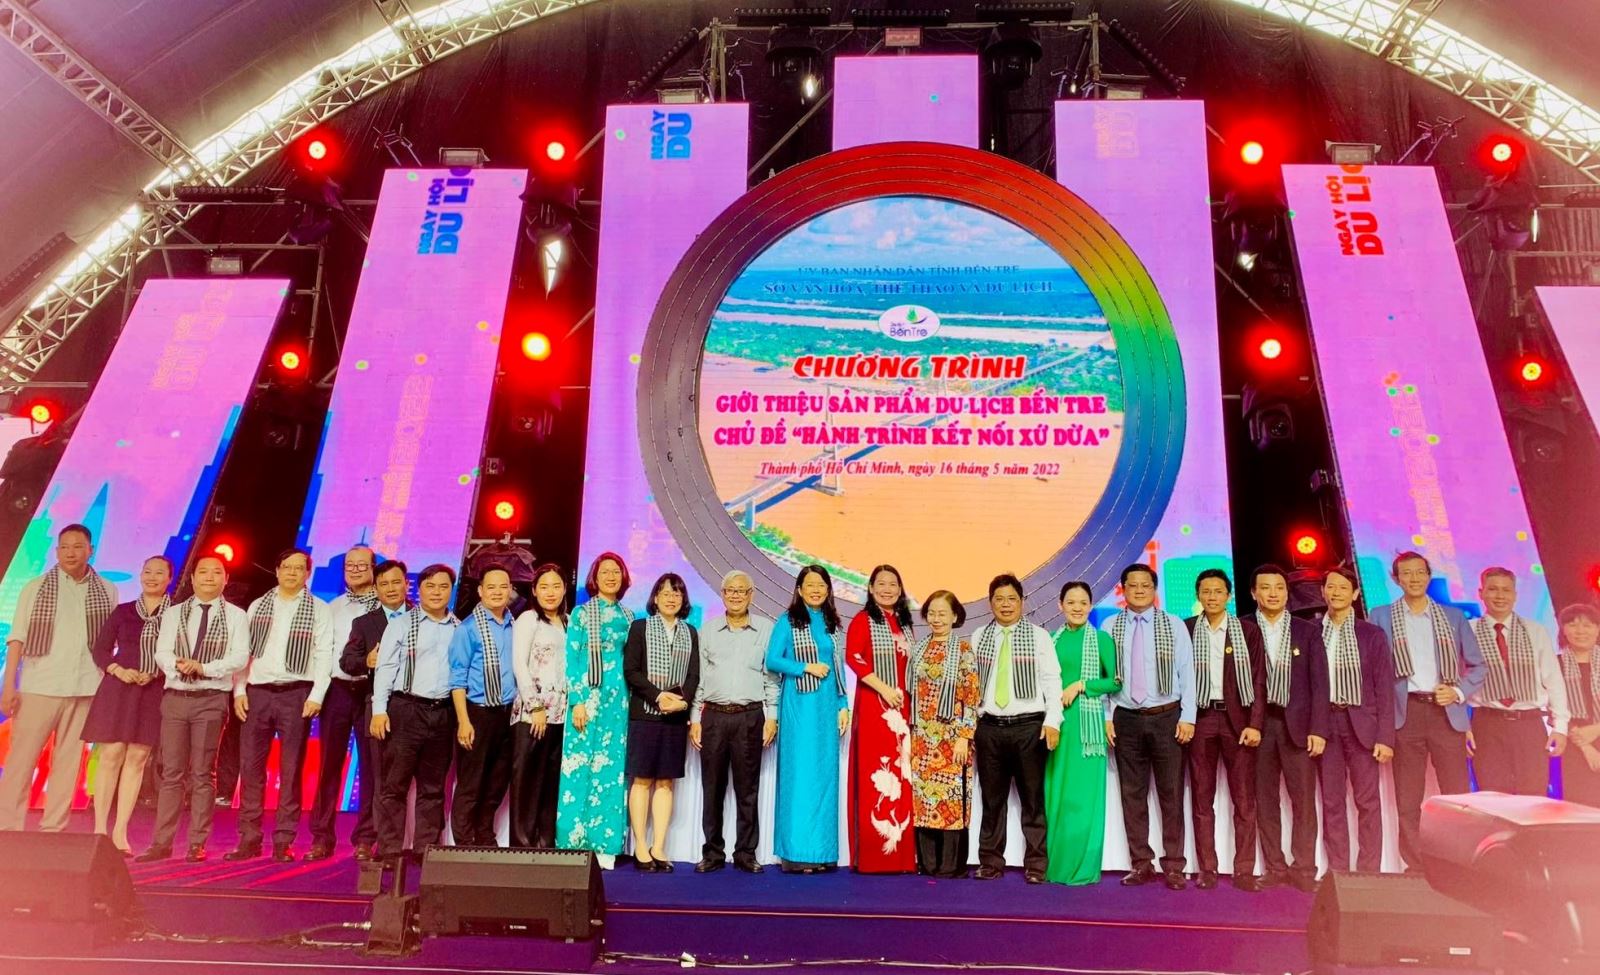 Chương trình quảng bá, xúc tiến Du lịch Bến Tre năm 2022 tại Thành phố Hồ Chí Minh